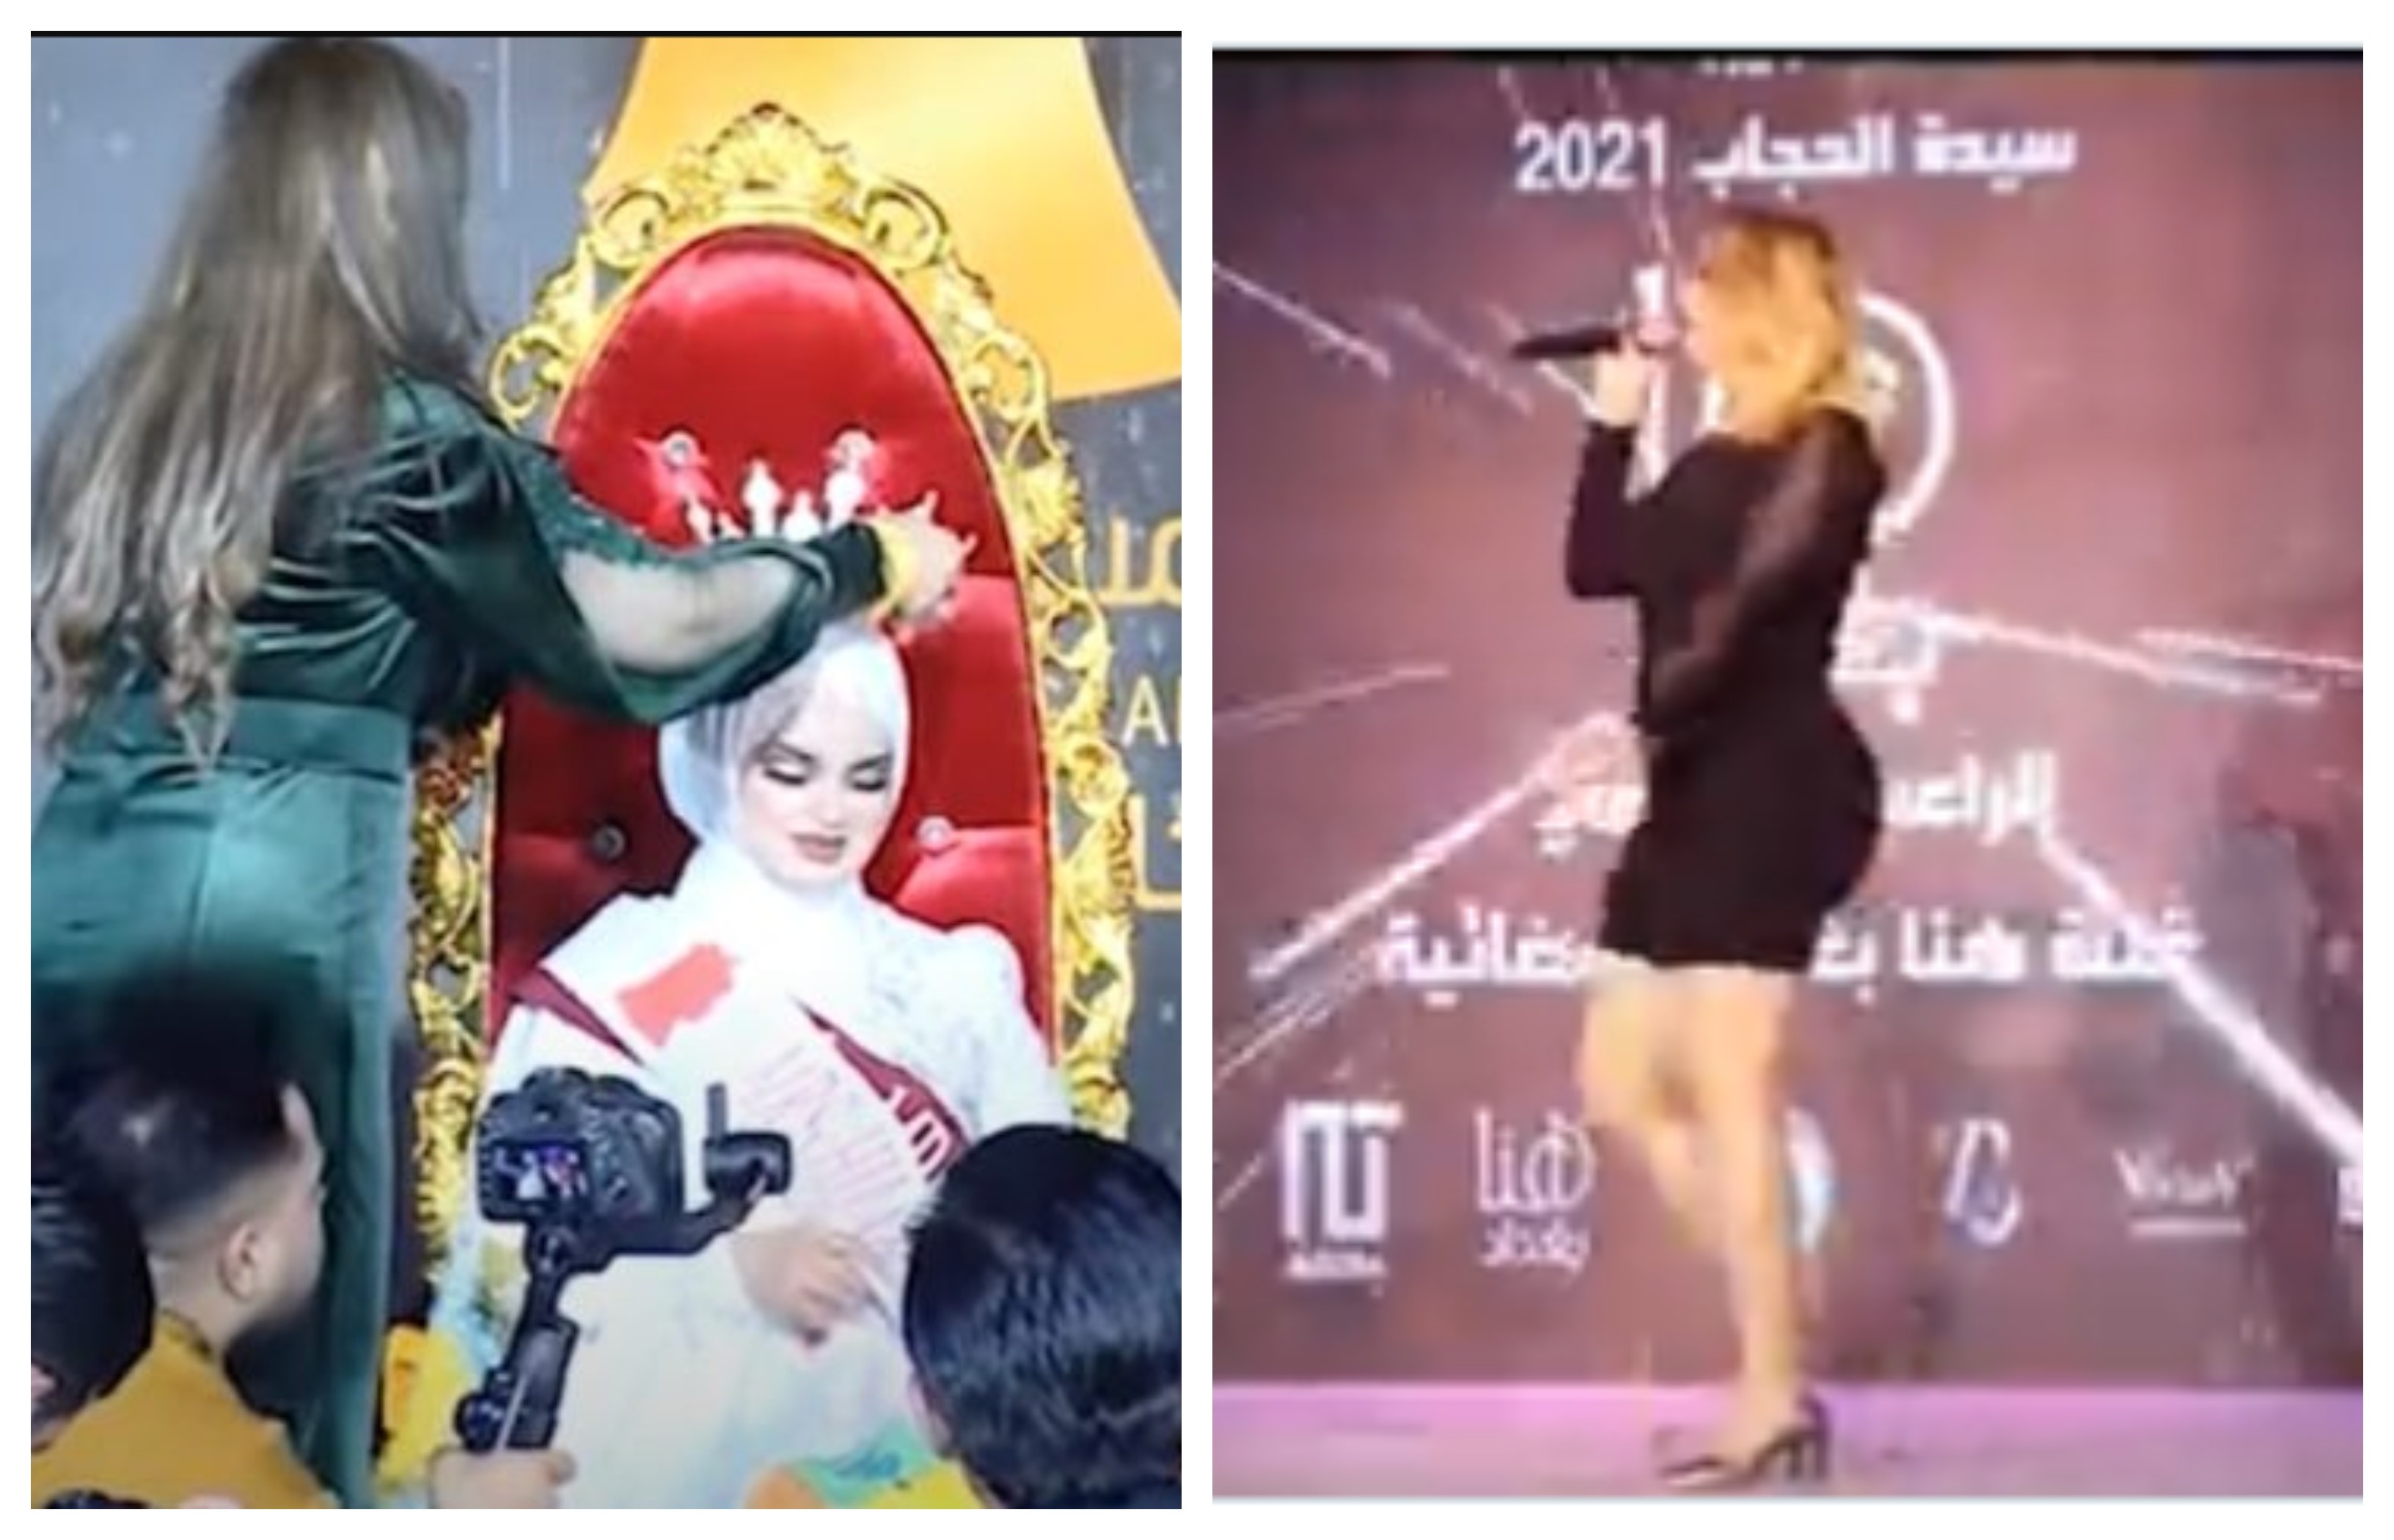 "رقص وغناء ونساء بملابس مثيرة".. شاهد: مسابقة ⁧‫"سيدة الحجاب" في العراق تثير الجدل ‬⁩على مواقع التواصل